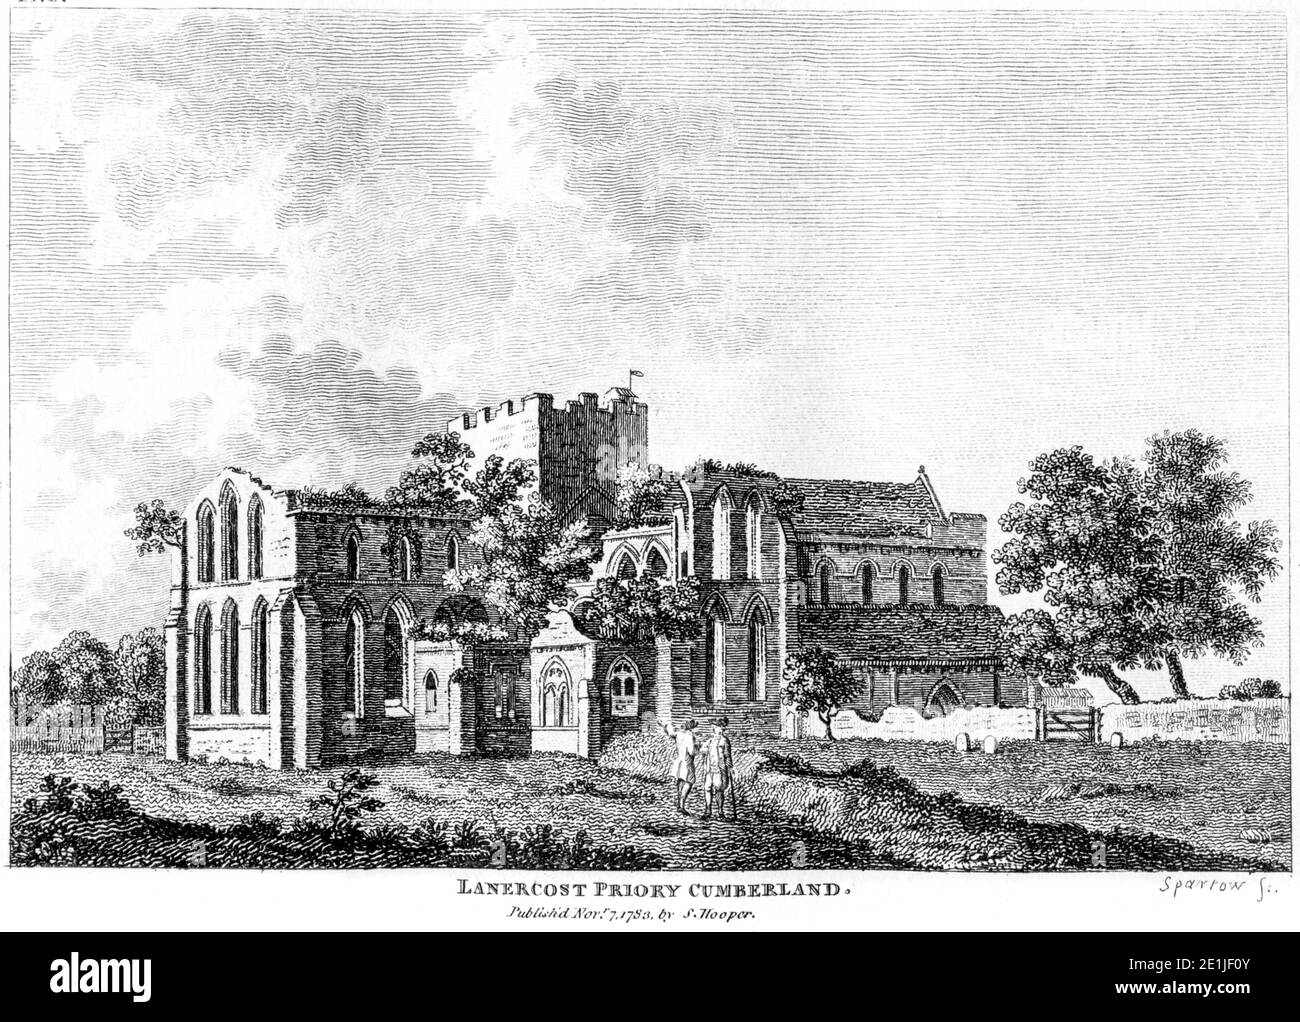 Un'incisione del Priorato di Lanercost Cumberland pubblicato il 7 novembre 1783 scandito ad alta risoluzione da un libro pubblicato nel 1780. Foto Stock